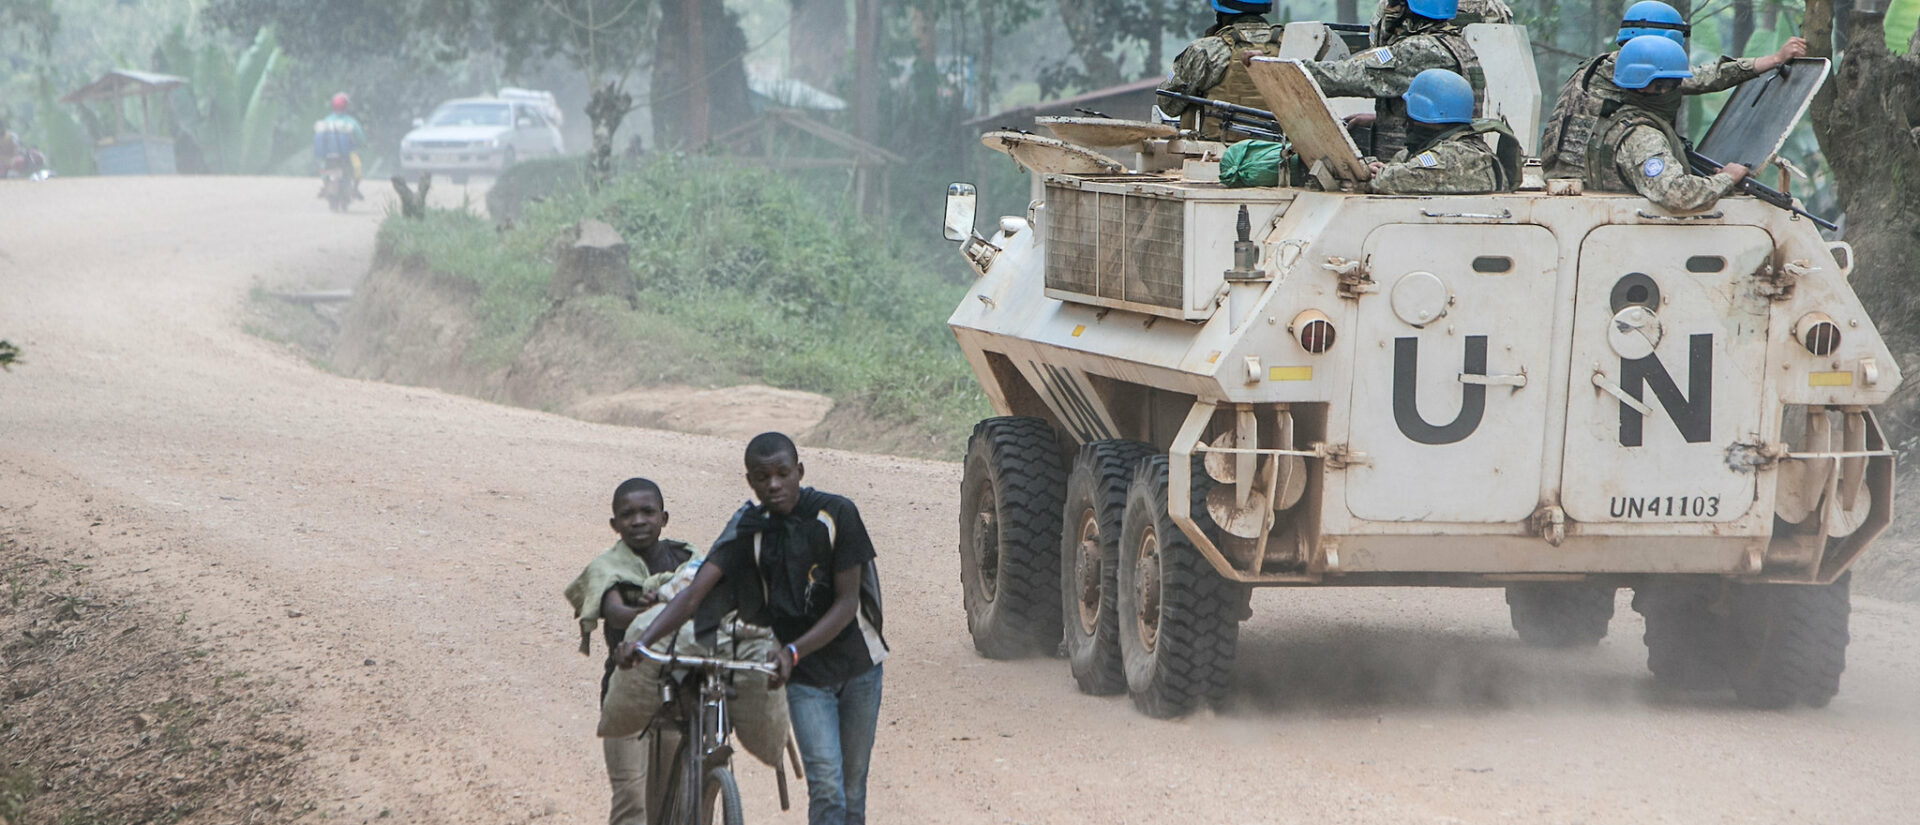 La mission de l'ONU dans l'est de la RDC est de plus en plus décriée | © MONUSCO Photos/Flickr/CC BY-SA 2.0